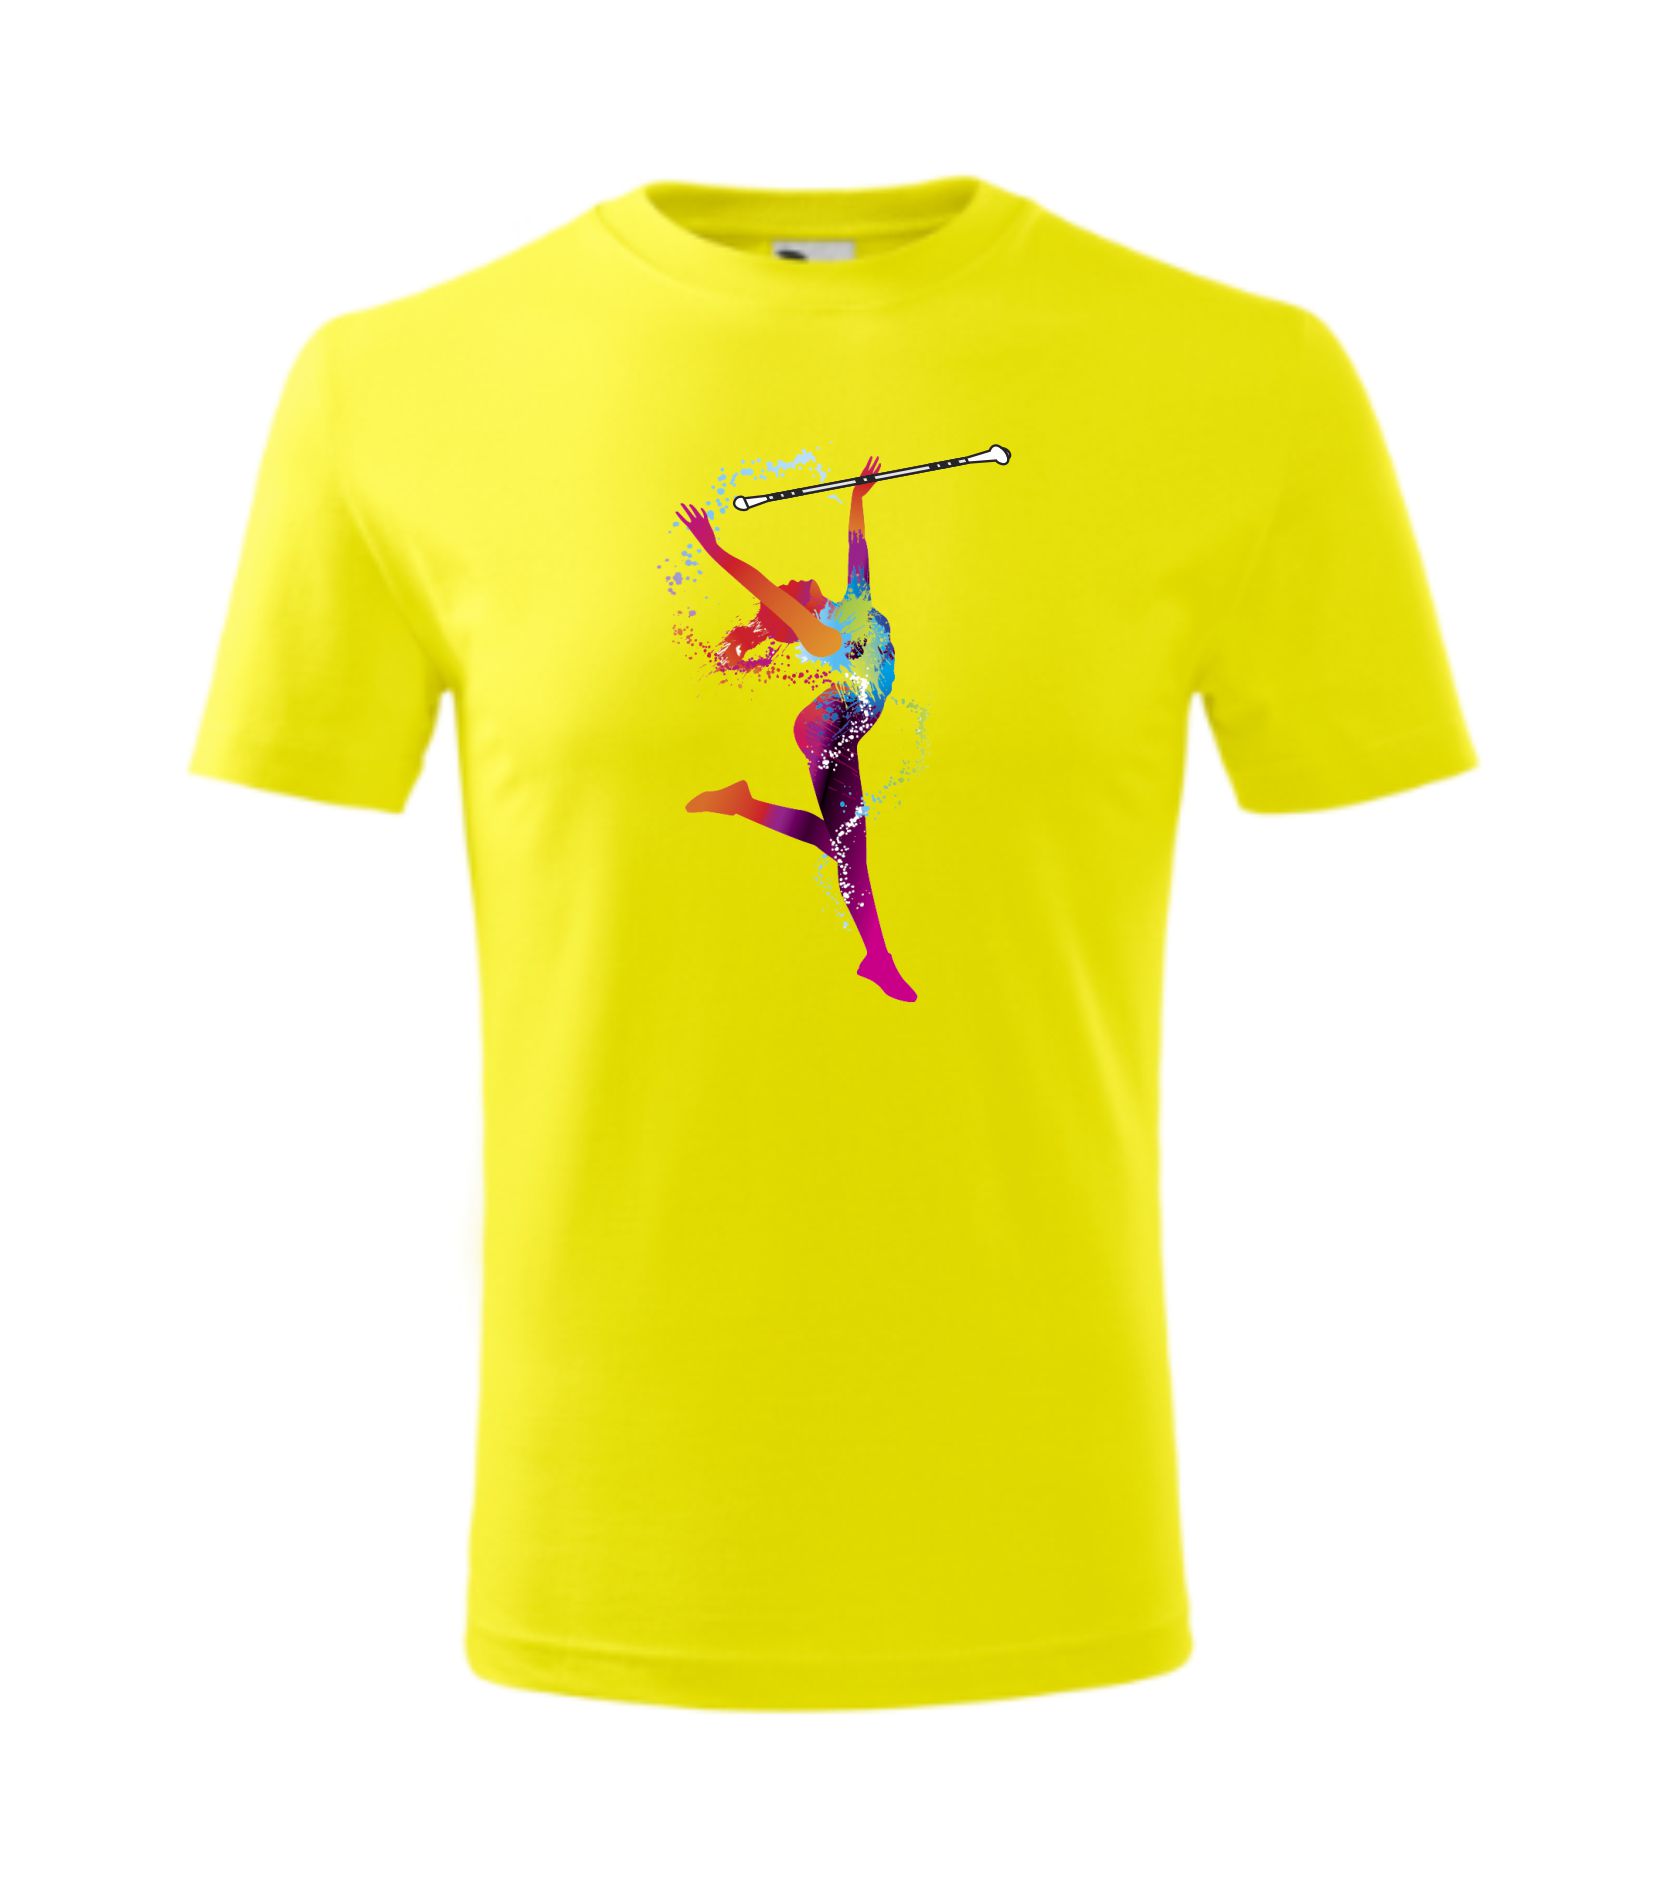 Koszulka dziecięca z tancerką, żółta